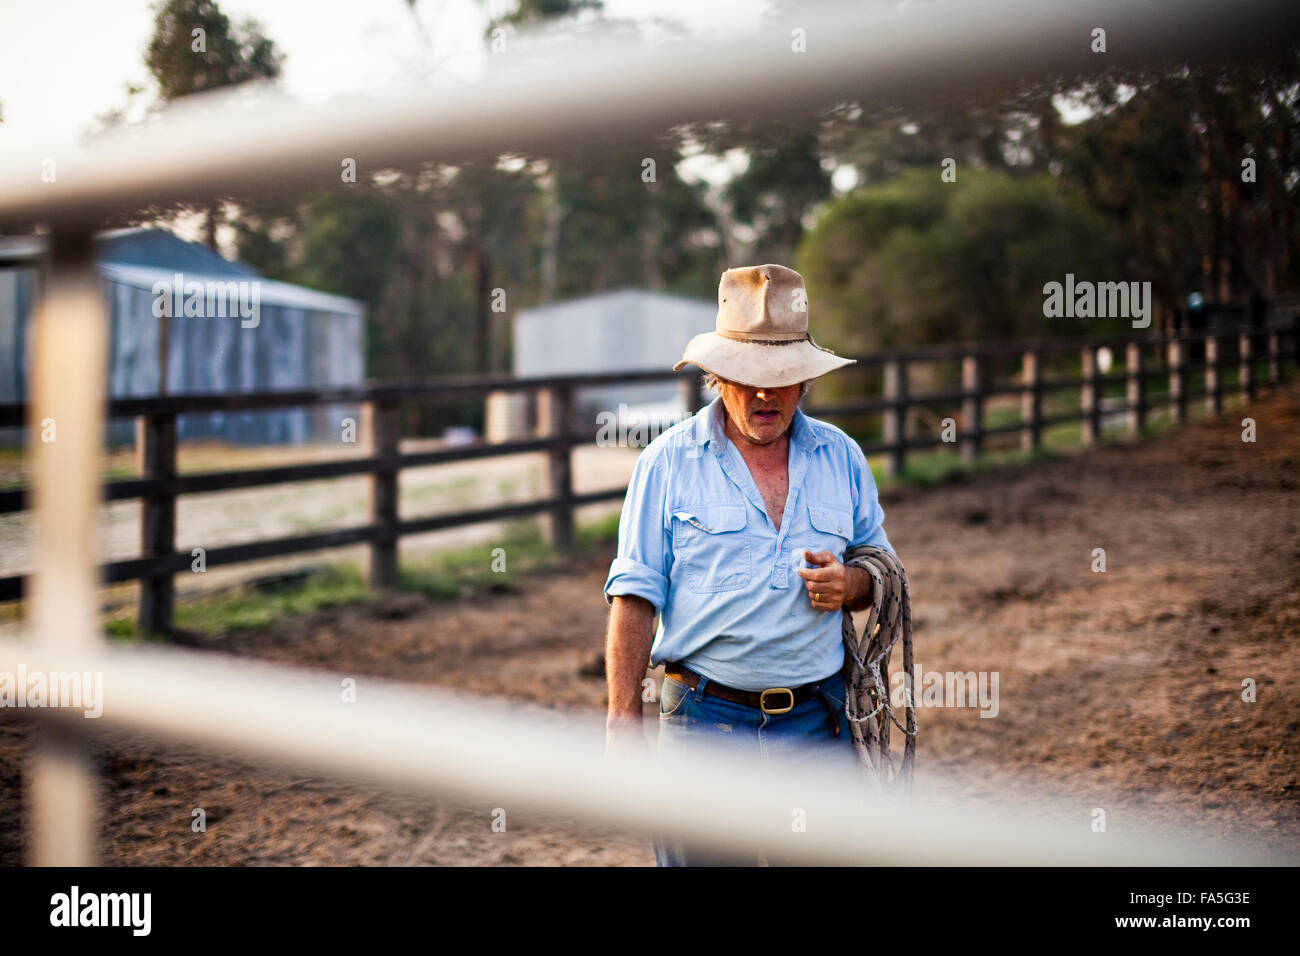 Stockman australiano y gran empresario de turismo del país, Steve Baird, en el patio de caballos en primavera Spur. Foto de stock